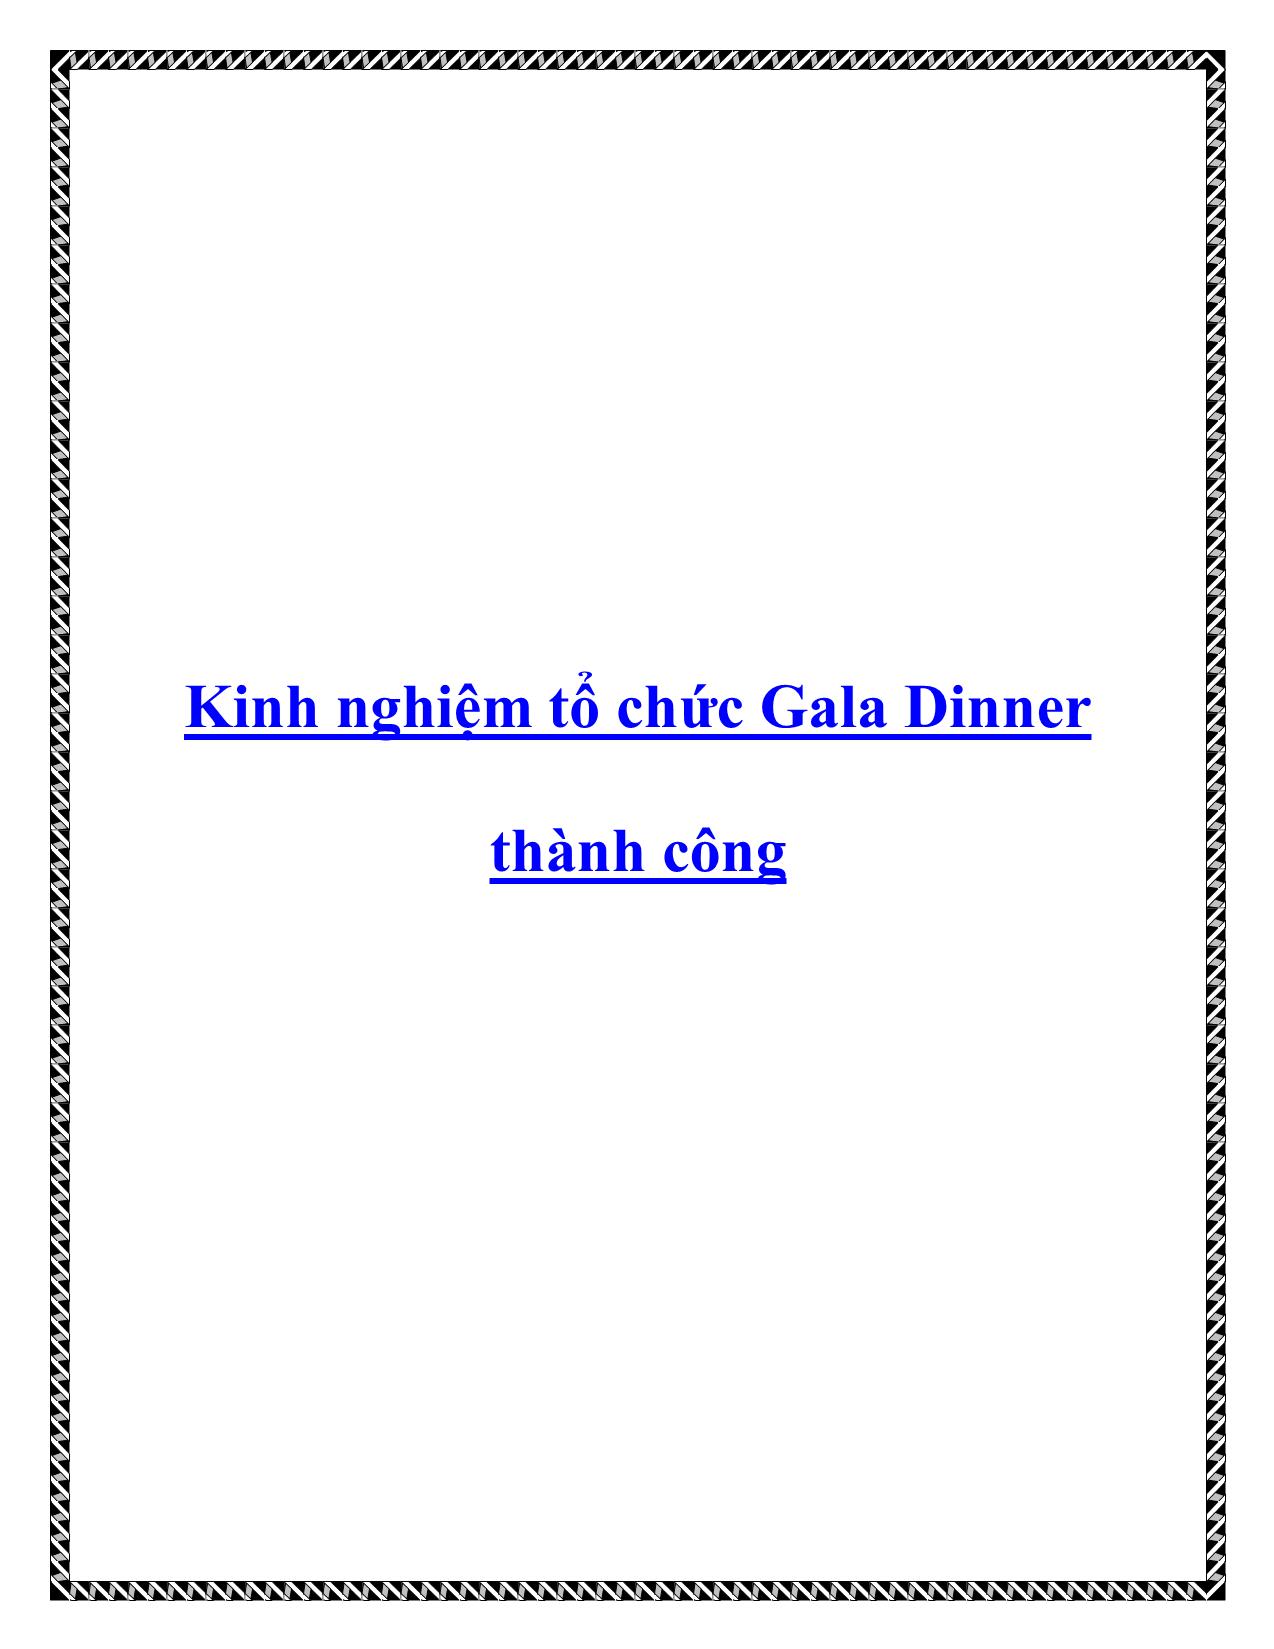 Kinh nghiệm tổ chức Gala Dinner thành công trang 1